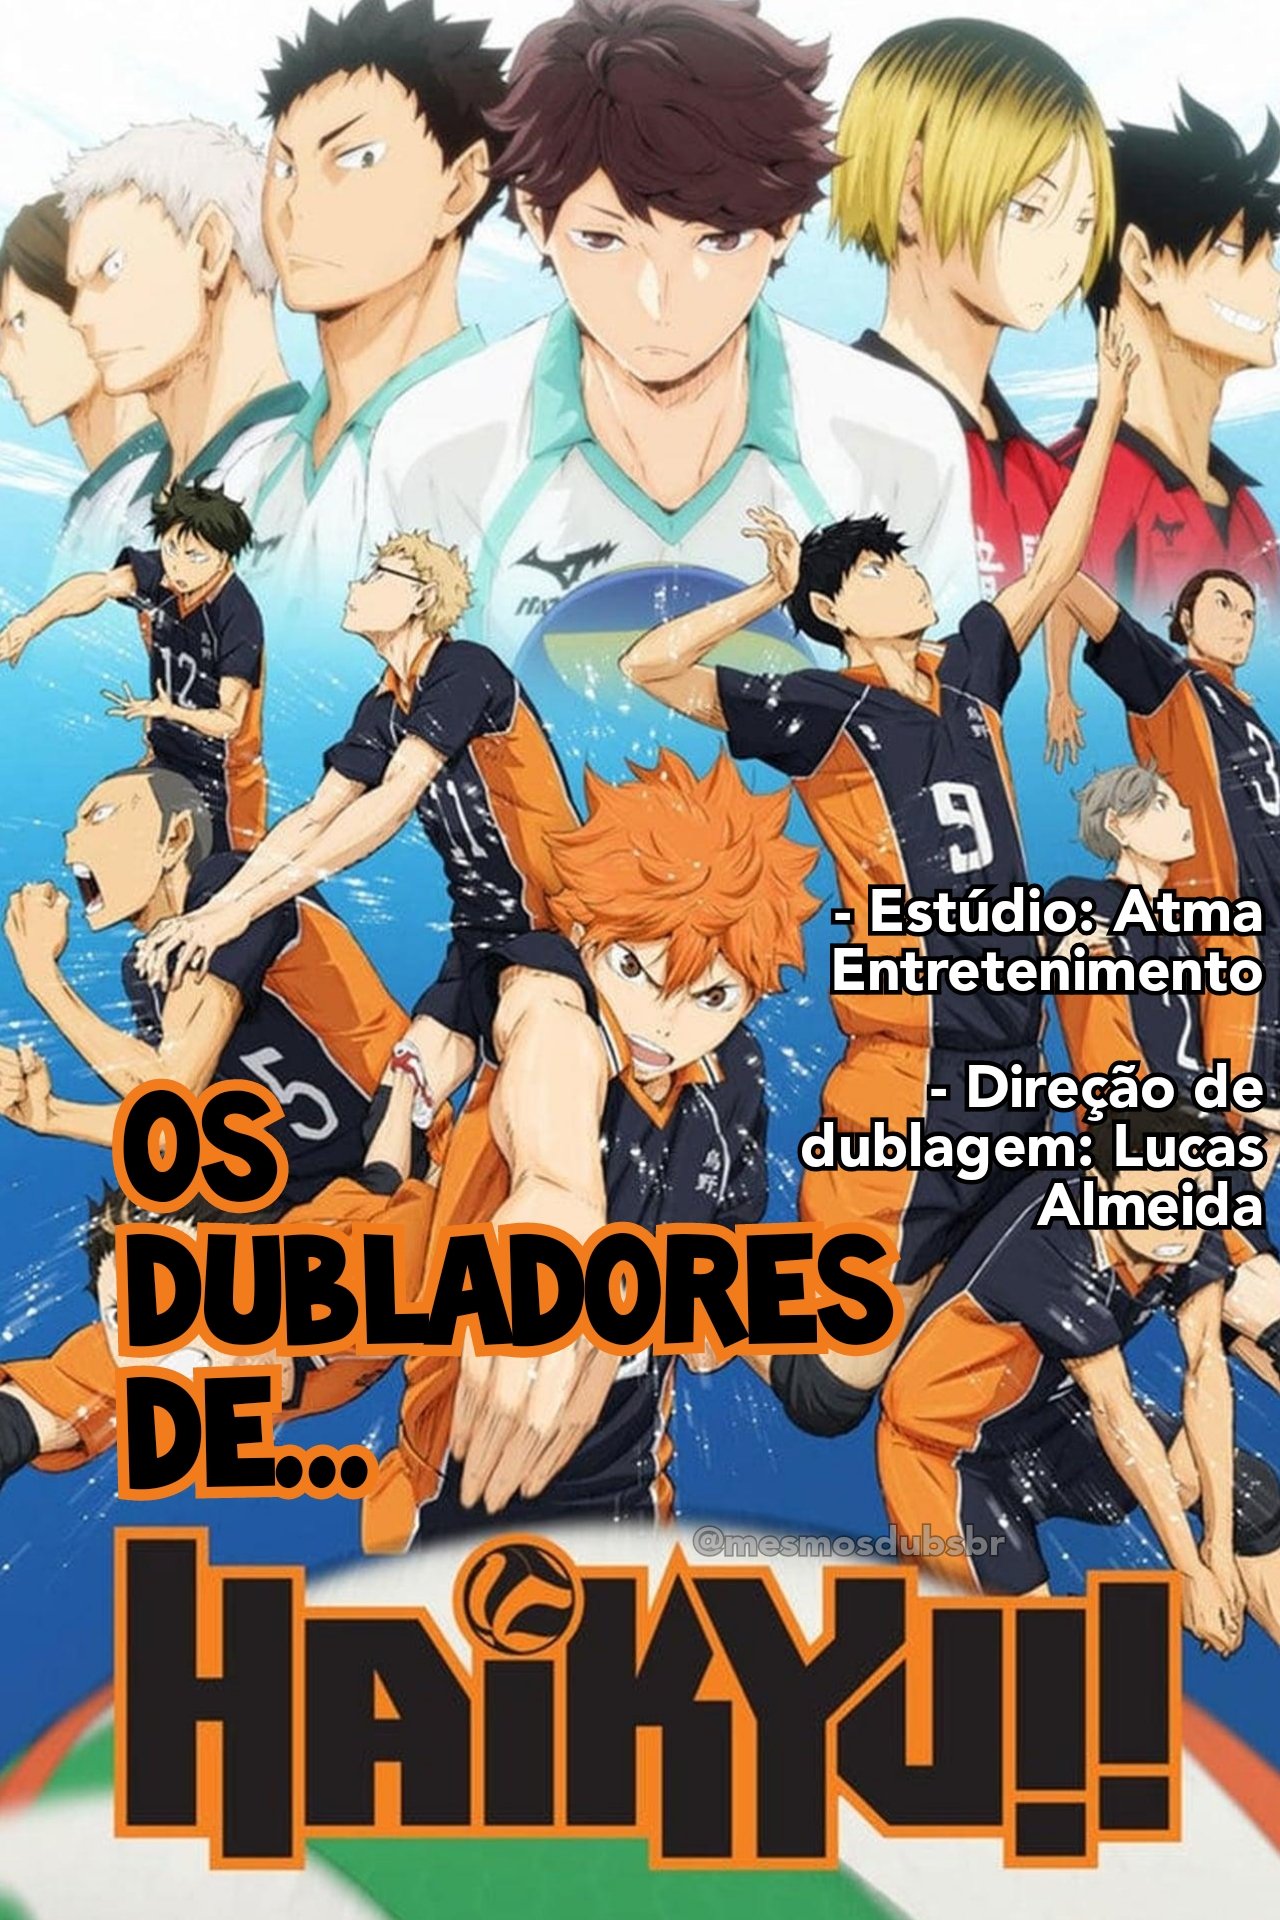 Poster Anime Haikyuu Capa